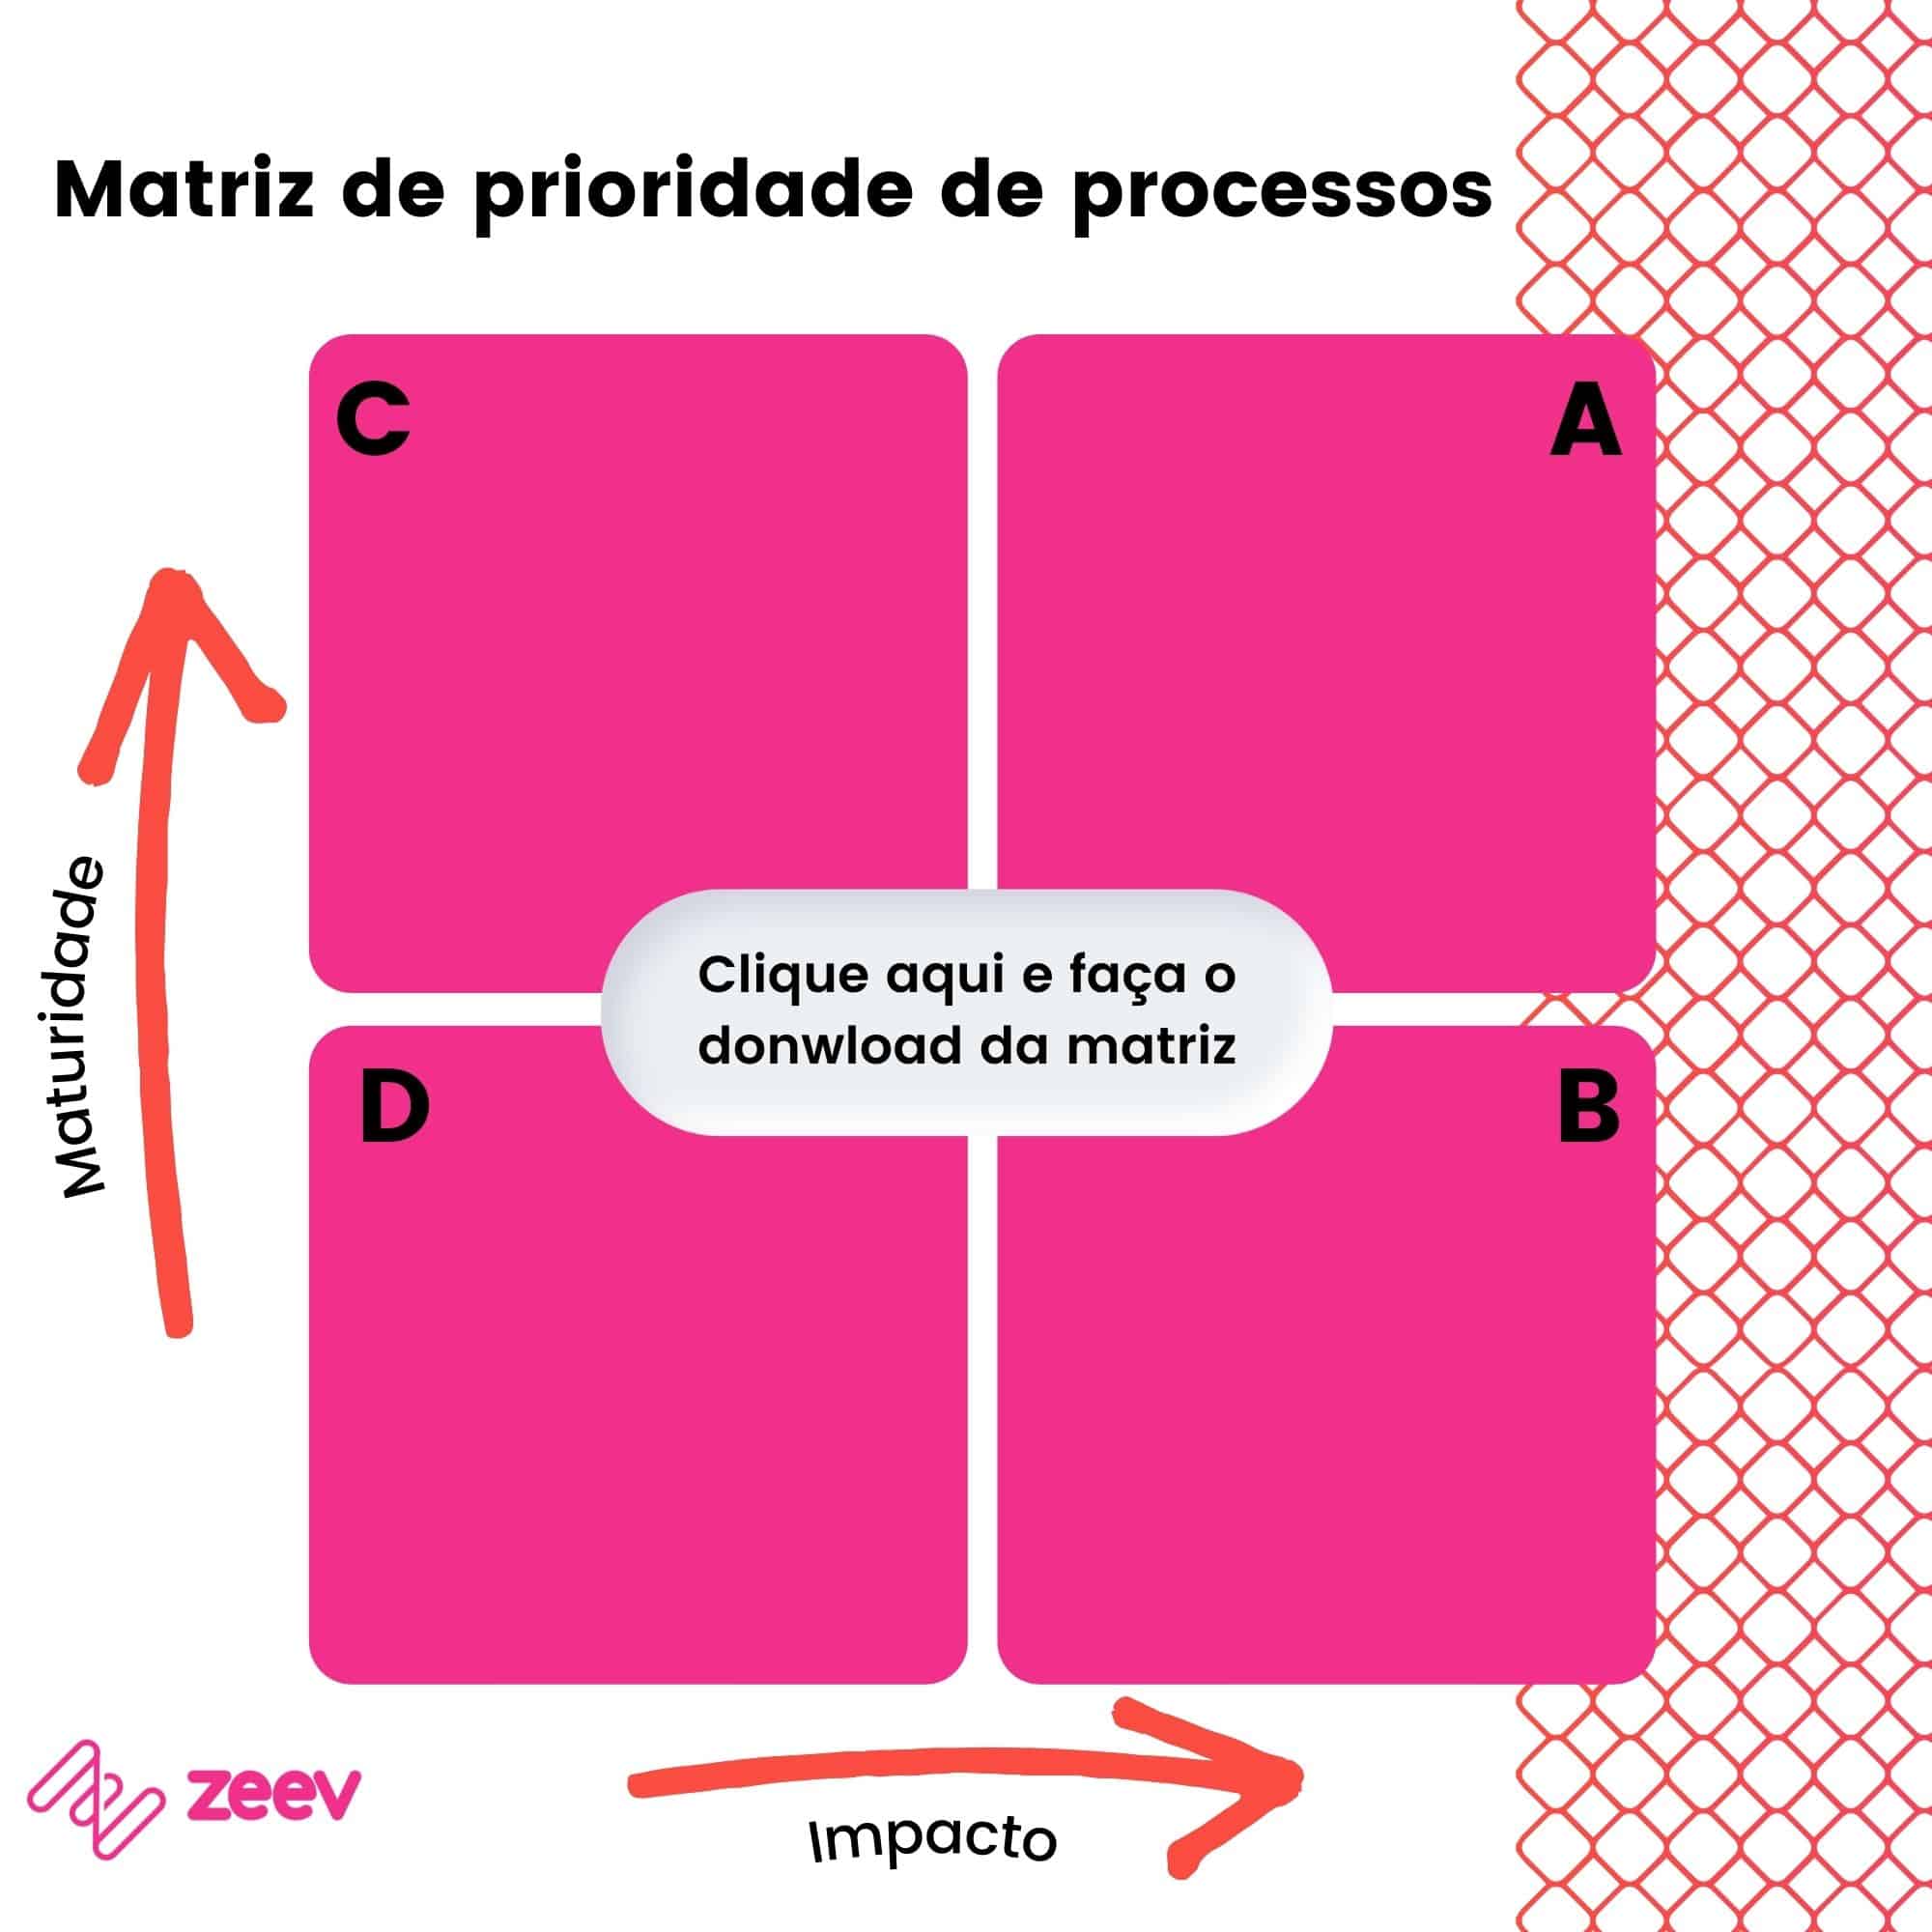 Matriz de prioridade de processos